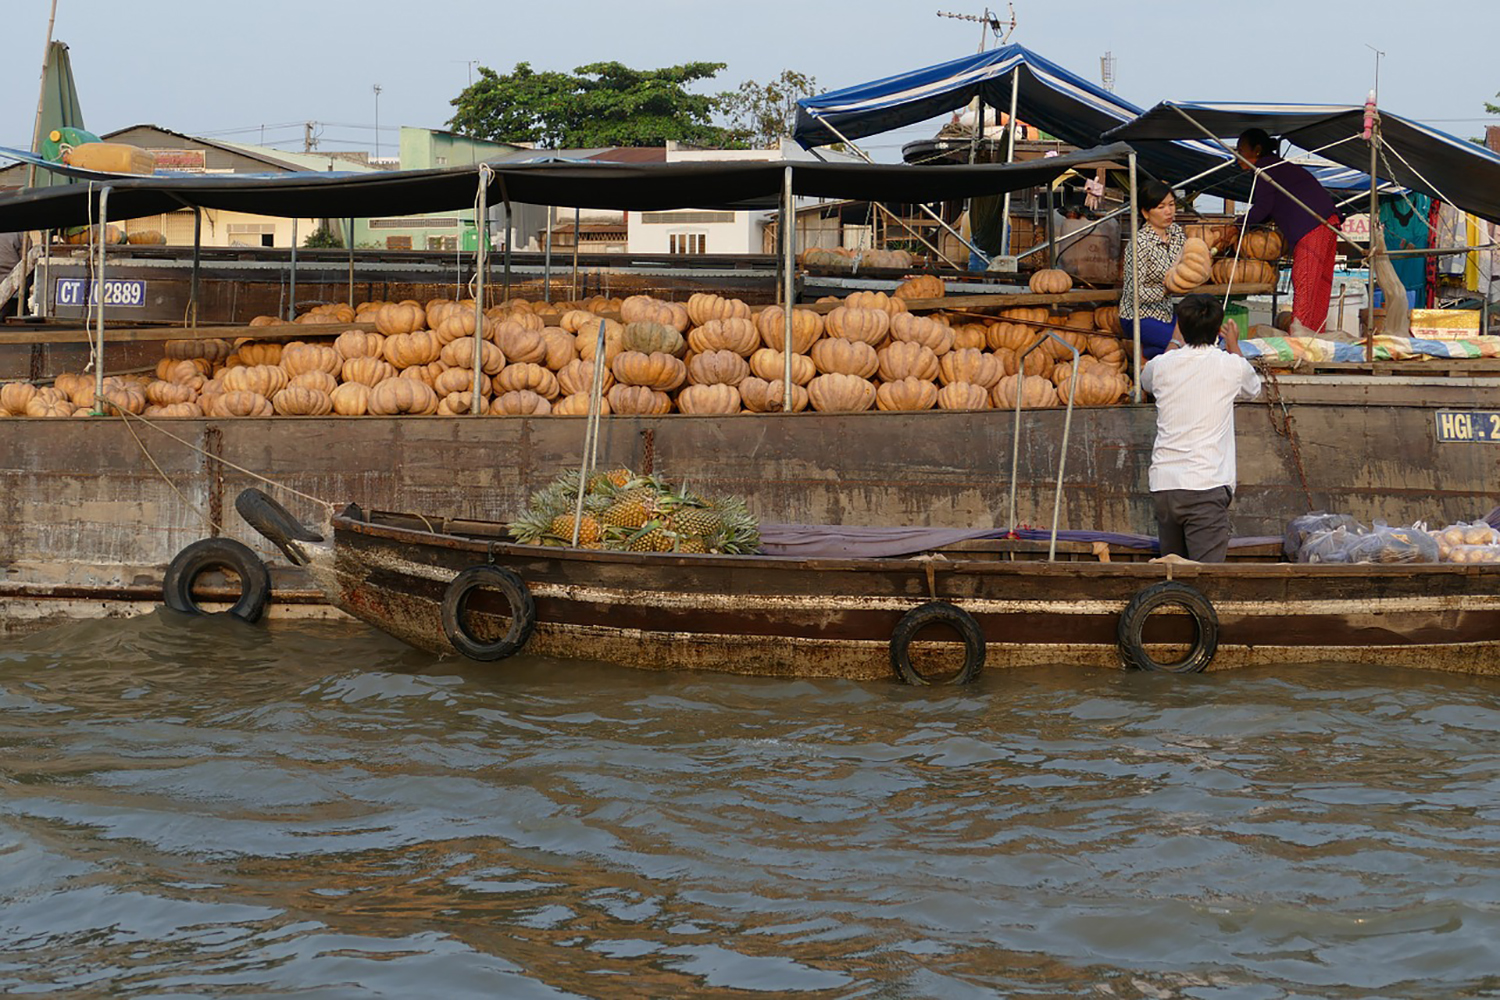 Le delta du Mekong traverse de nombreux villages. Les habitants de la région se déplacent et font du commerce en canaux. ©pixabay creative commons CC0